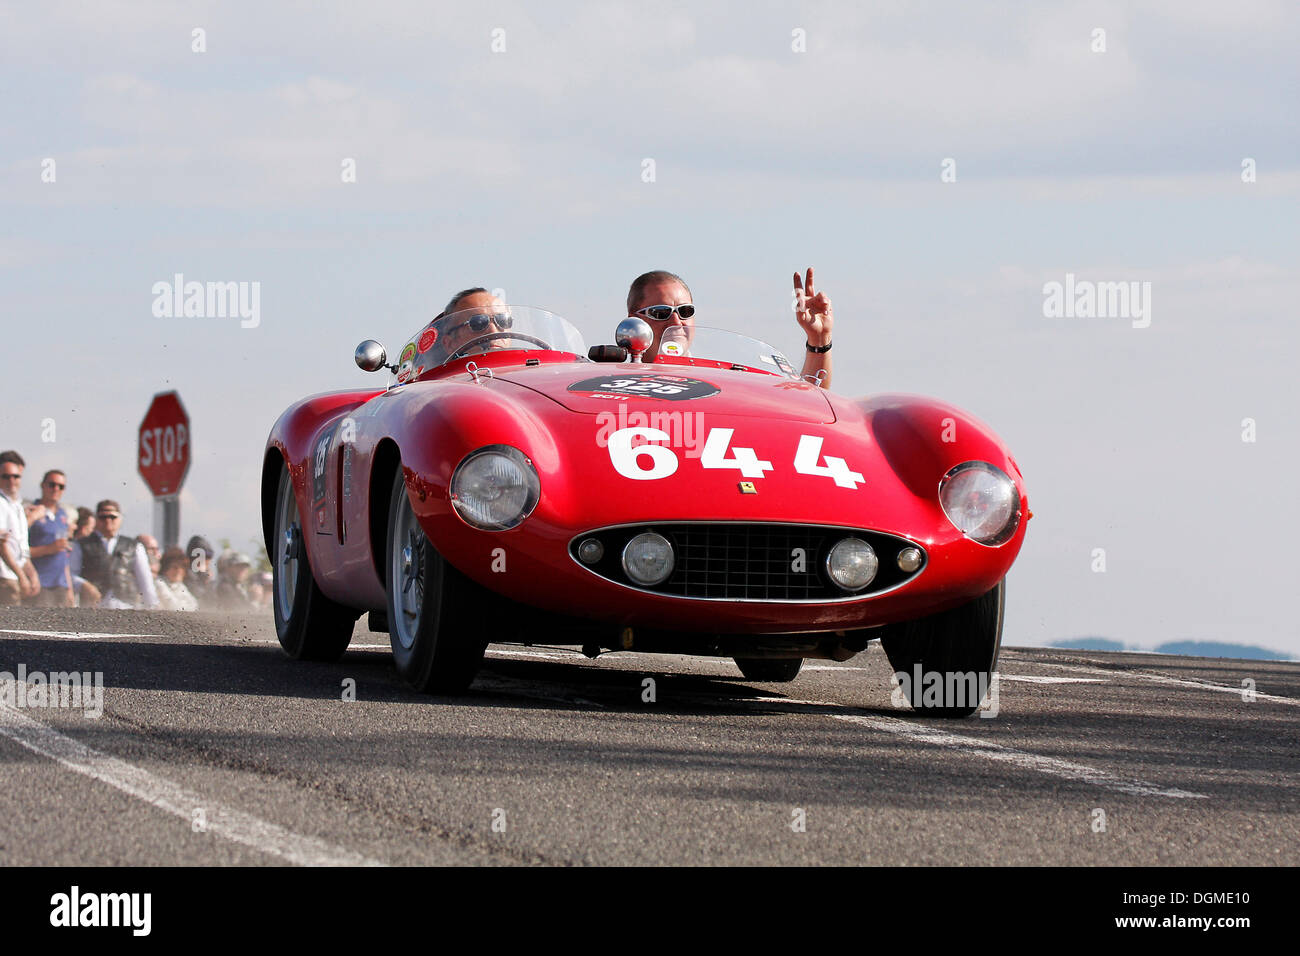 Vintage car, Ferrari 500 Mondial, built in 1955, Mille Miglia 2011, Passo della Raticosa, Tuscany, Italy, Europe Stock Photo